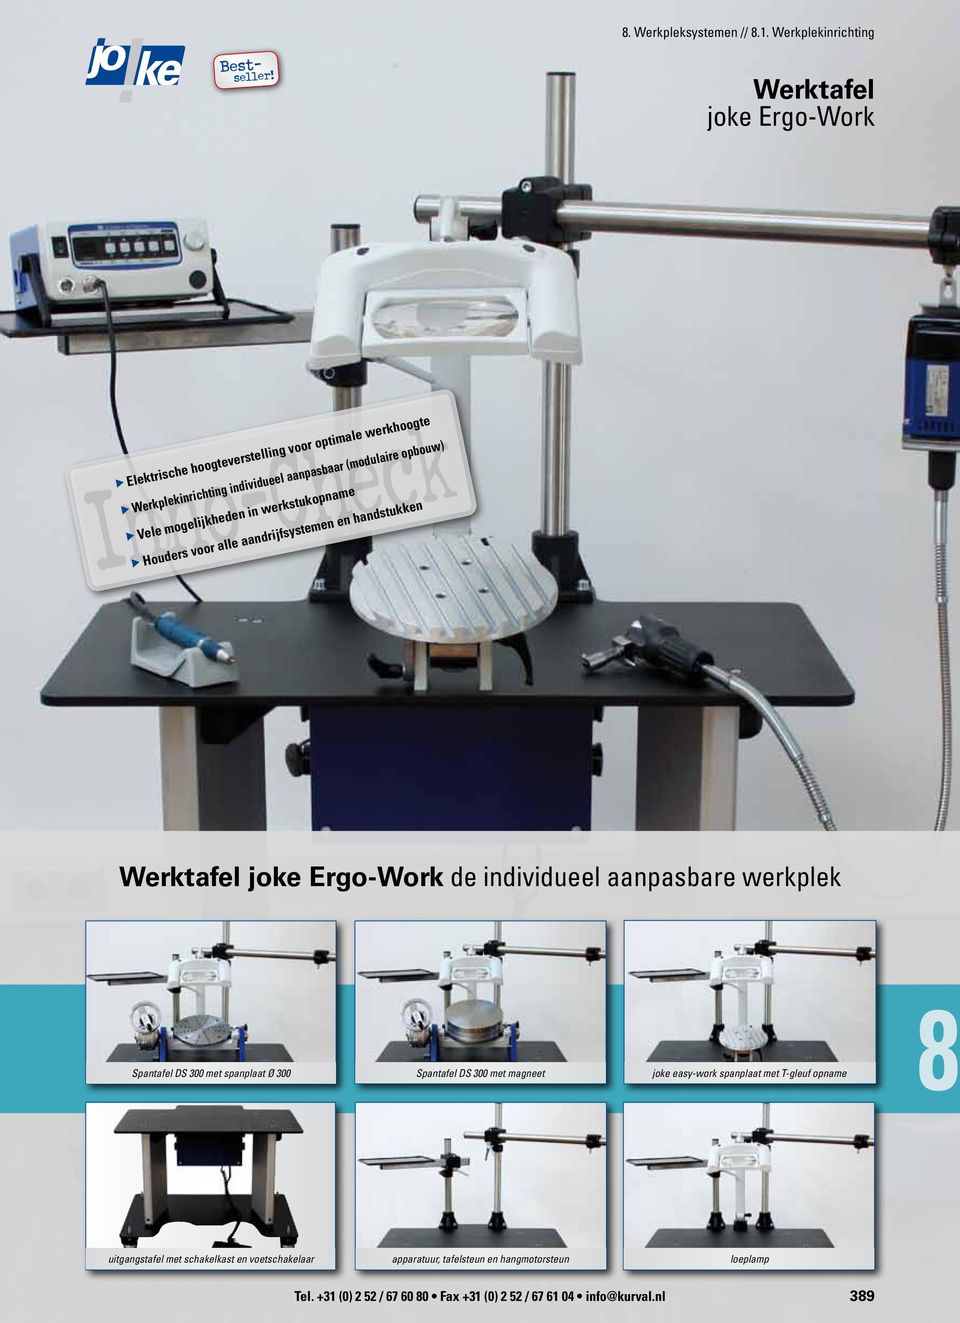 mogelijkheden in werkstukopname Houders voor alle aandrijfsystemen en handstukken Werktafel joke Ergo-Work de individueel aanpasbare werkplek Spantafel DS 300